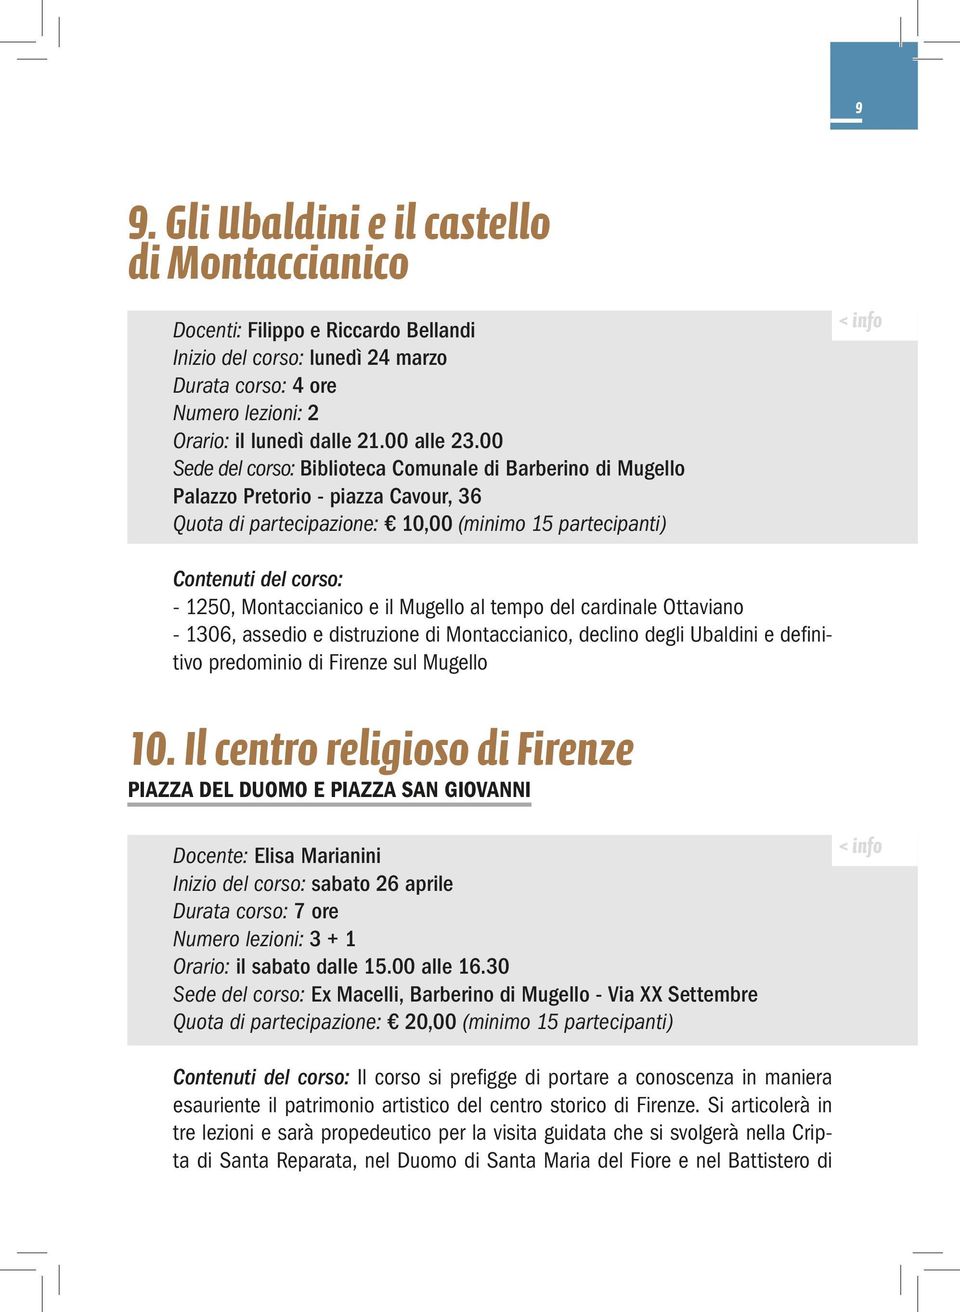 e il Mugello al tempo del cardinale Ottaviano - 1306, assedio e distruzione di Montaccianico, declino degli Ubaldini e definitivo predominio di Firenze sul Mugello 10.